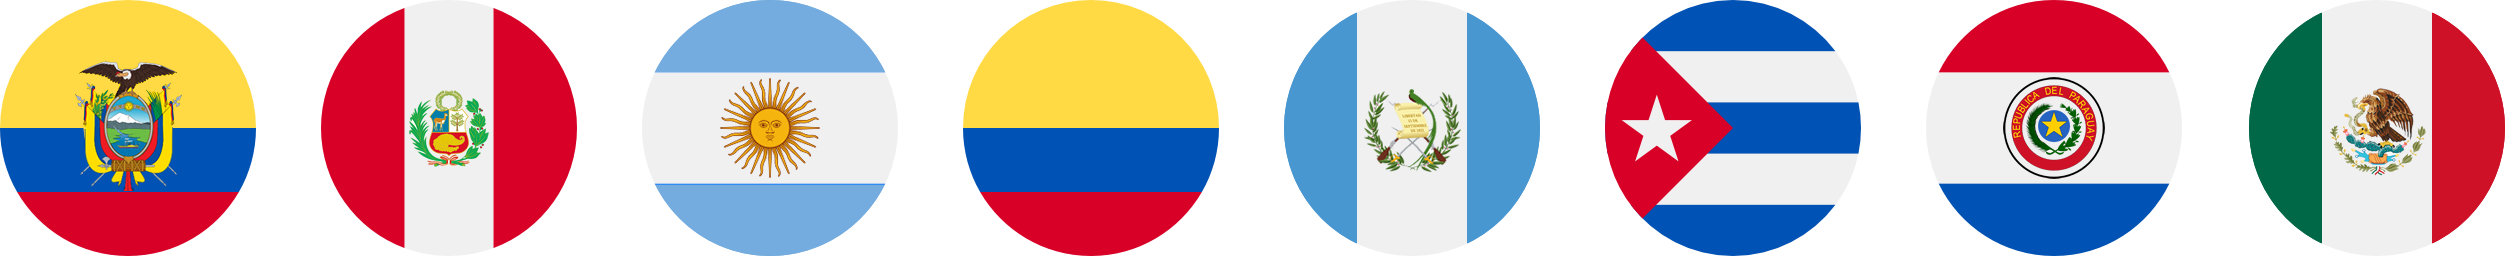 Ecuador, Perú, Argentina, Colombia, Guatemala, Cuba, Paraguay y México